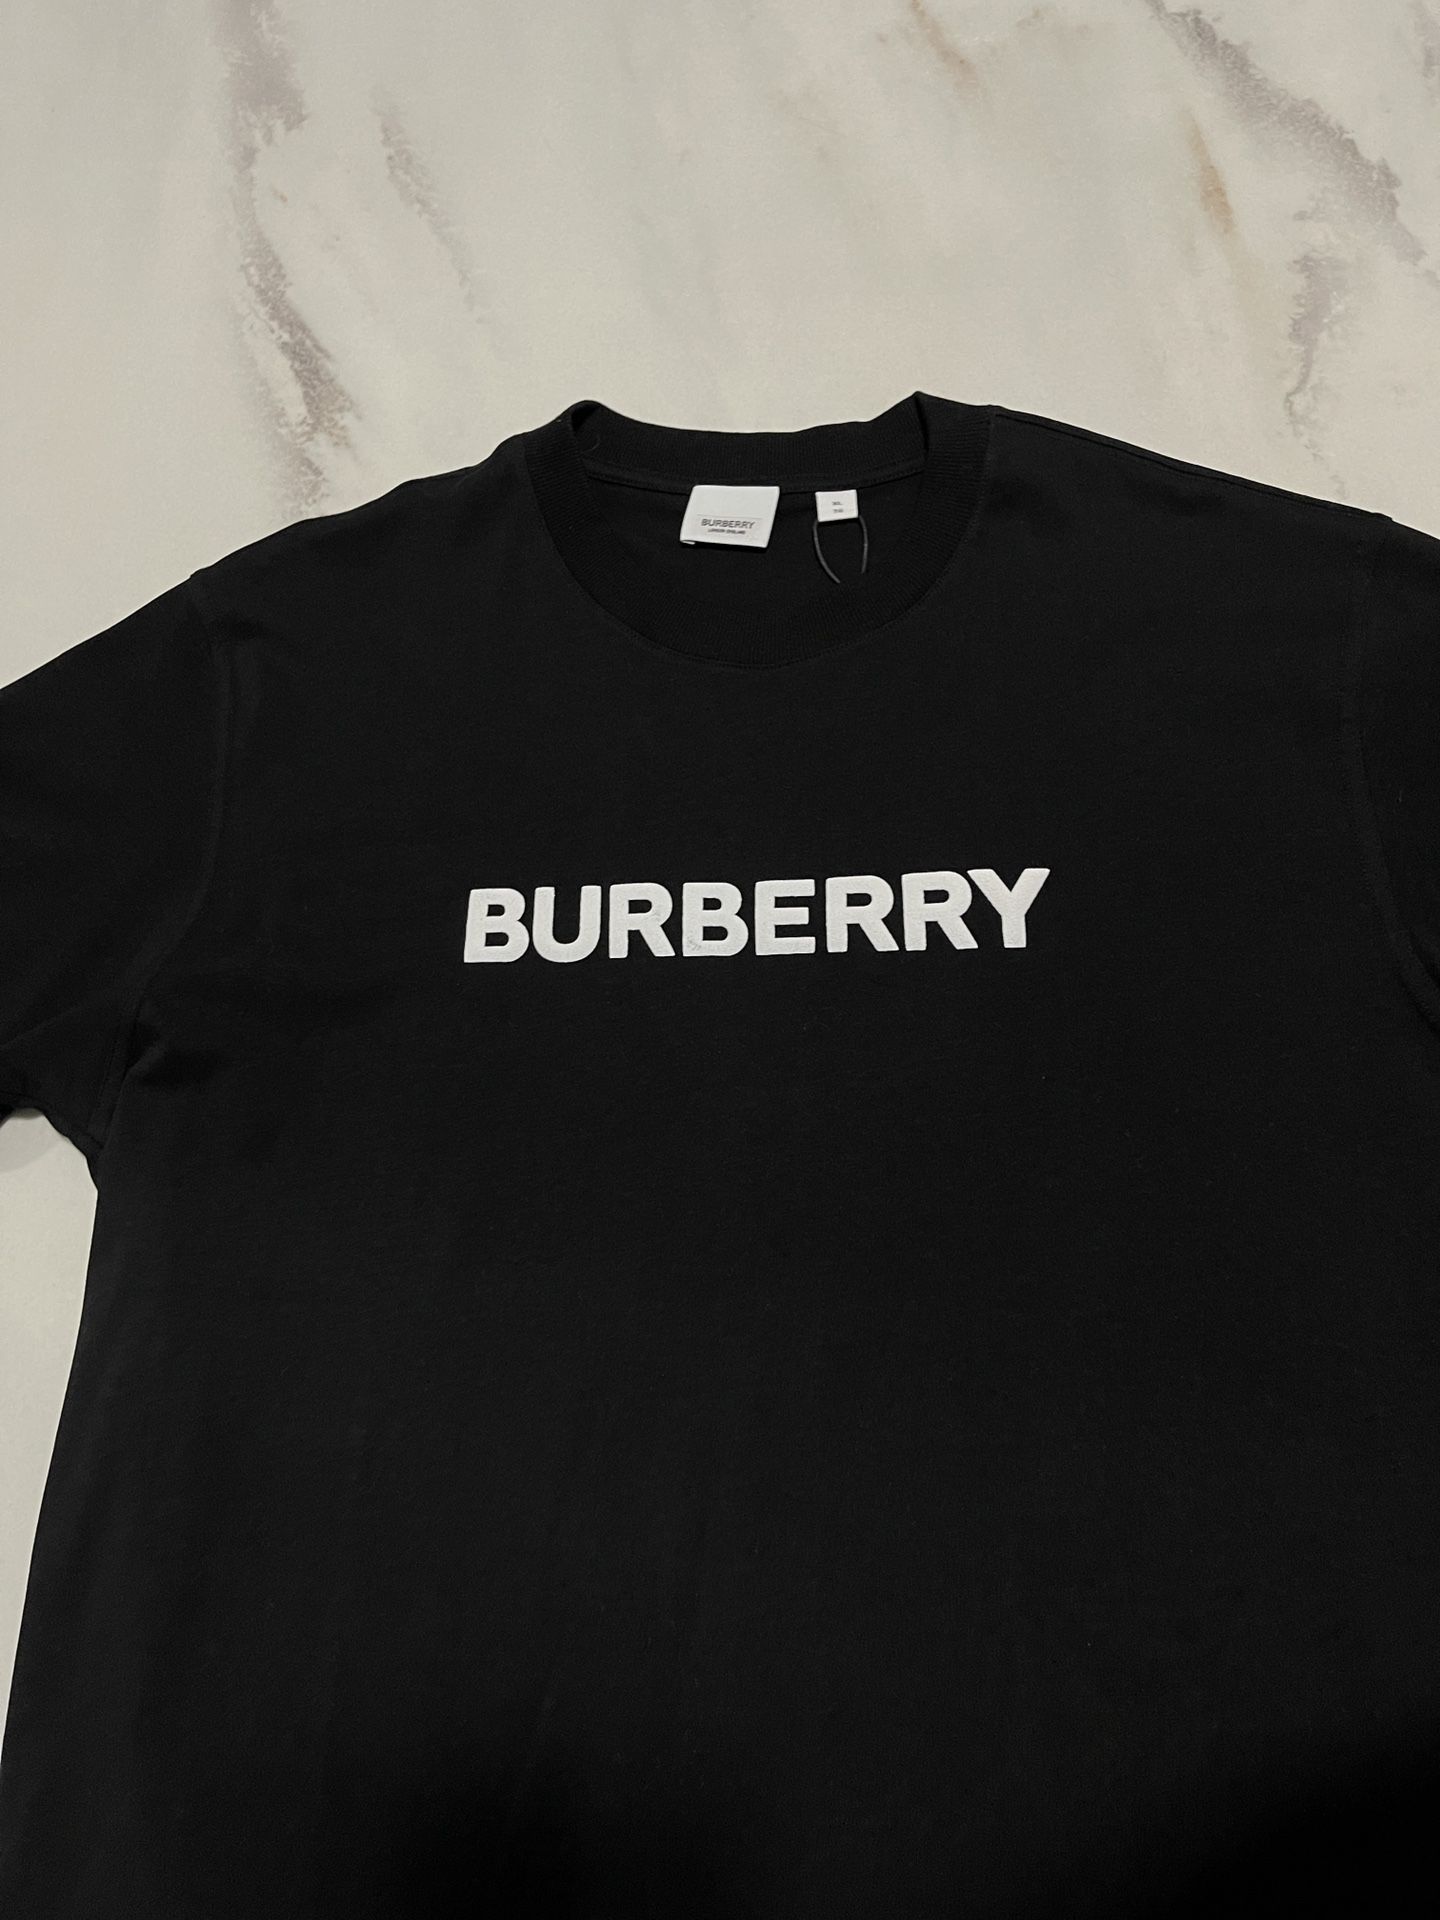 Burberry Tshirt 